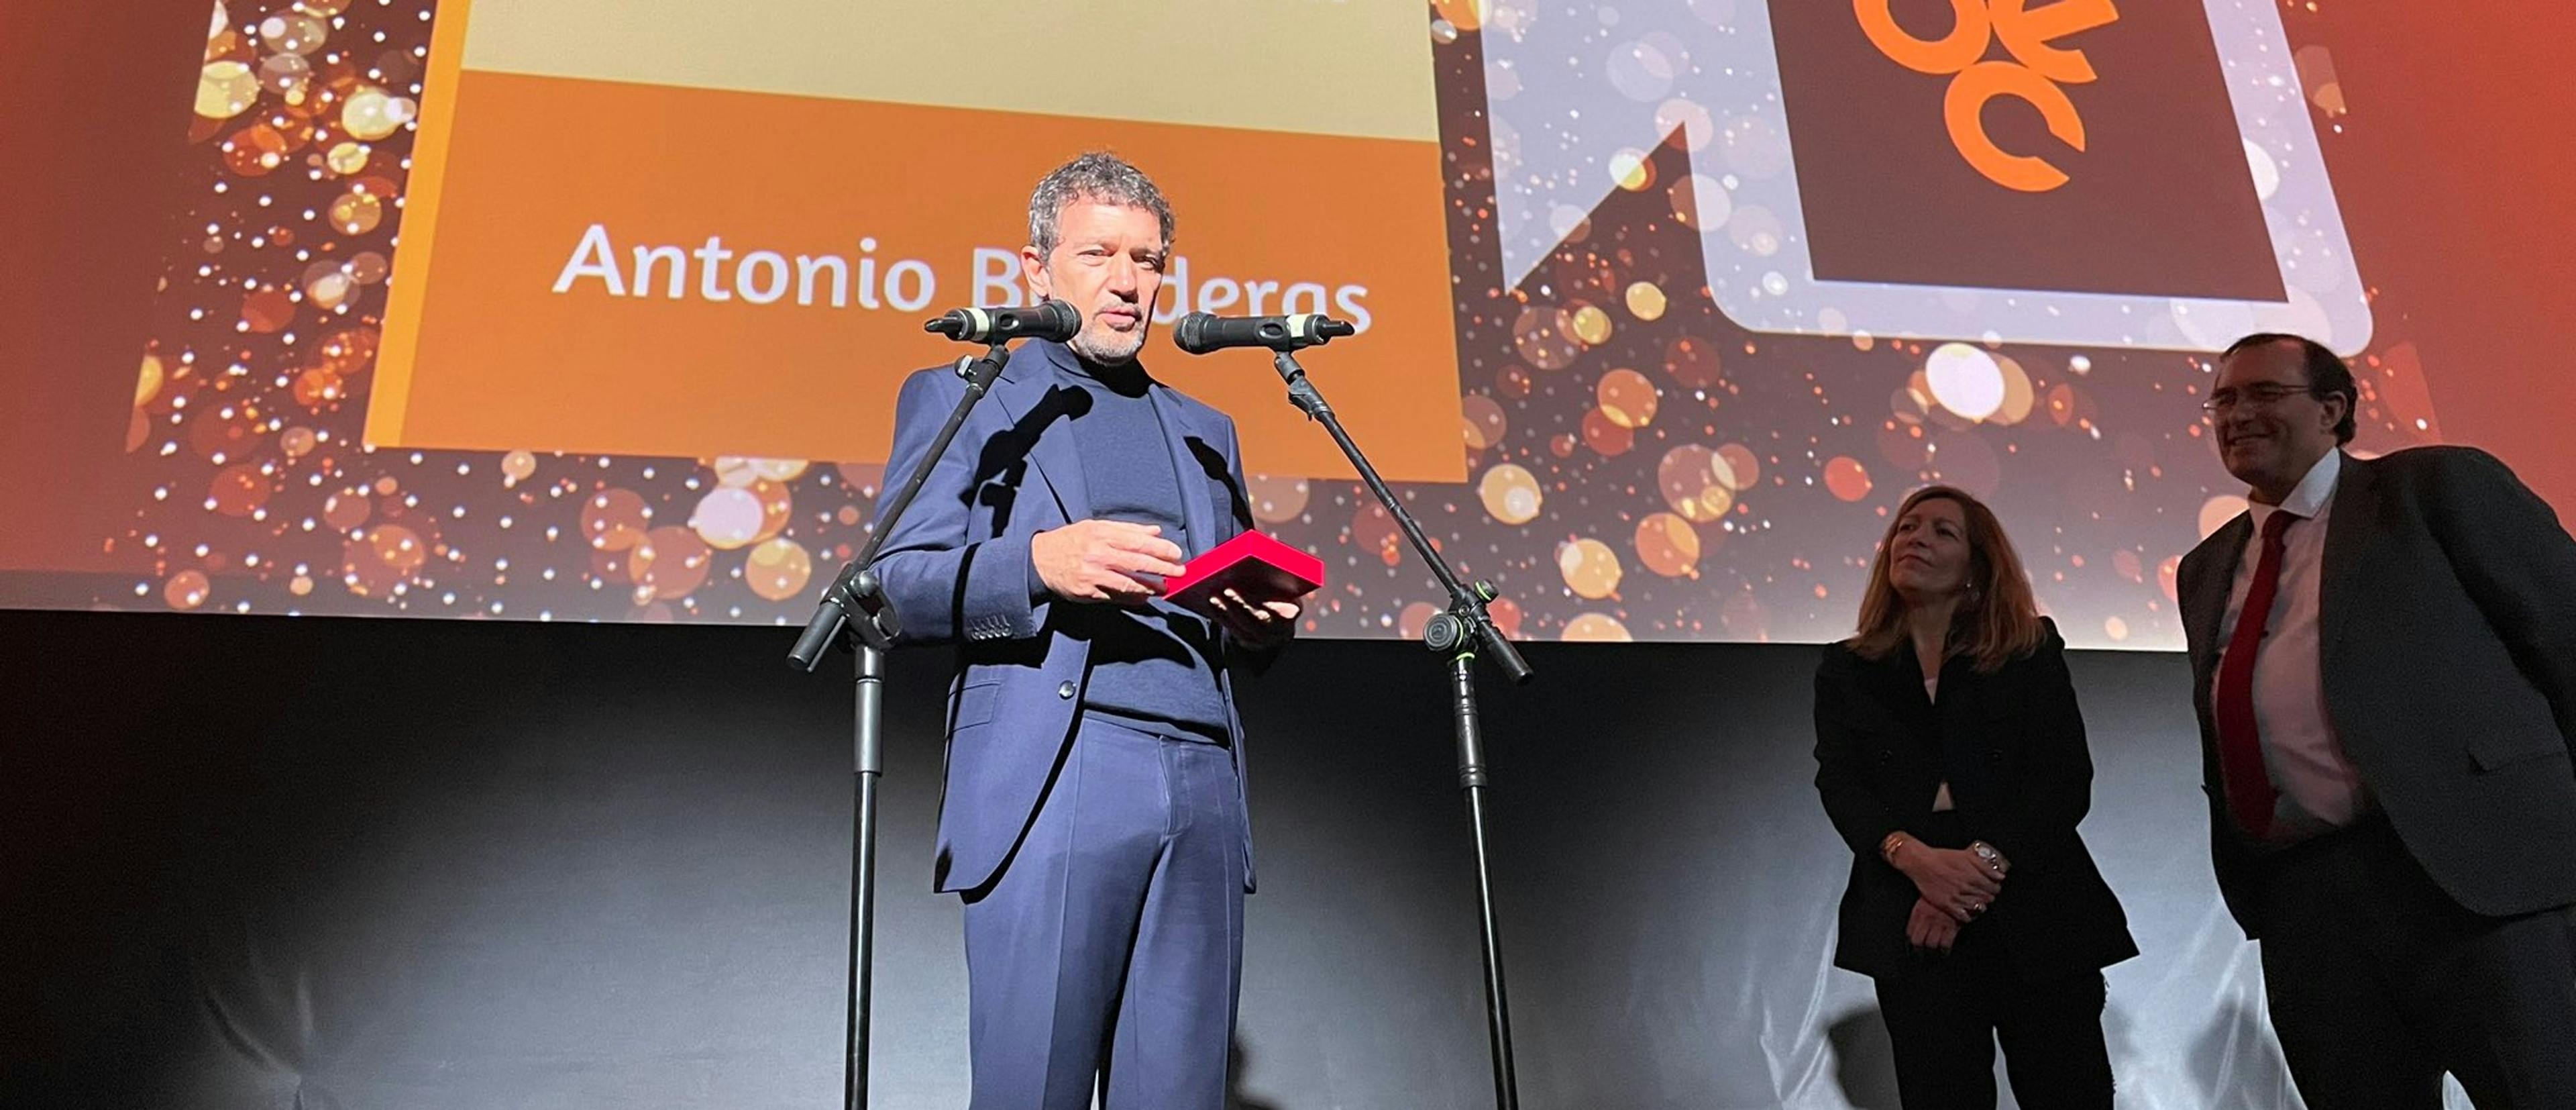 El actor Antonio Banderas recoge el premio de honor del Círculo de Escritores Cinematográficos